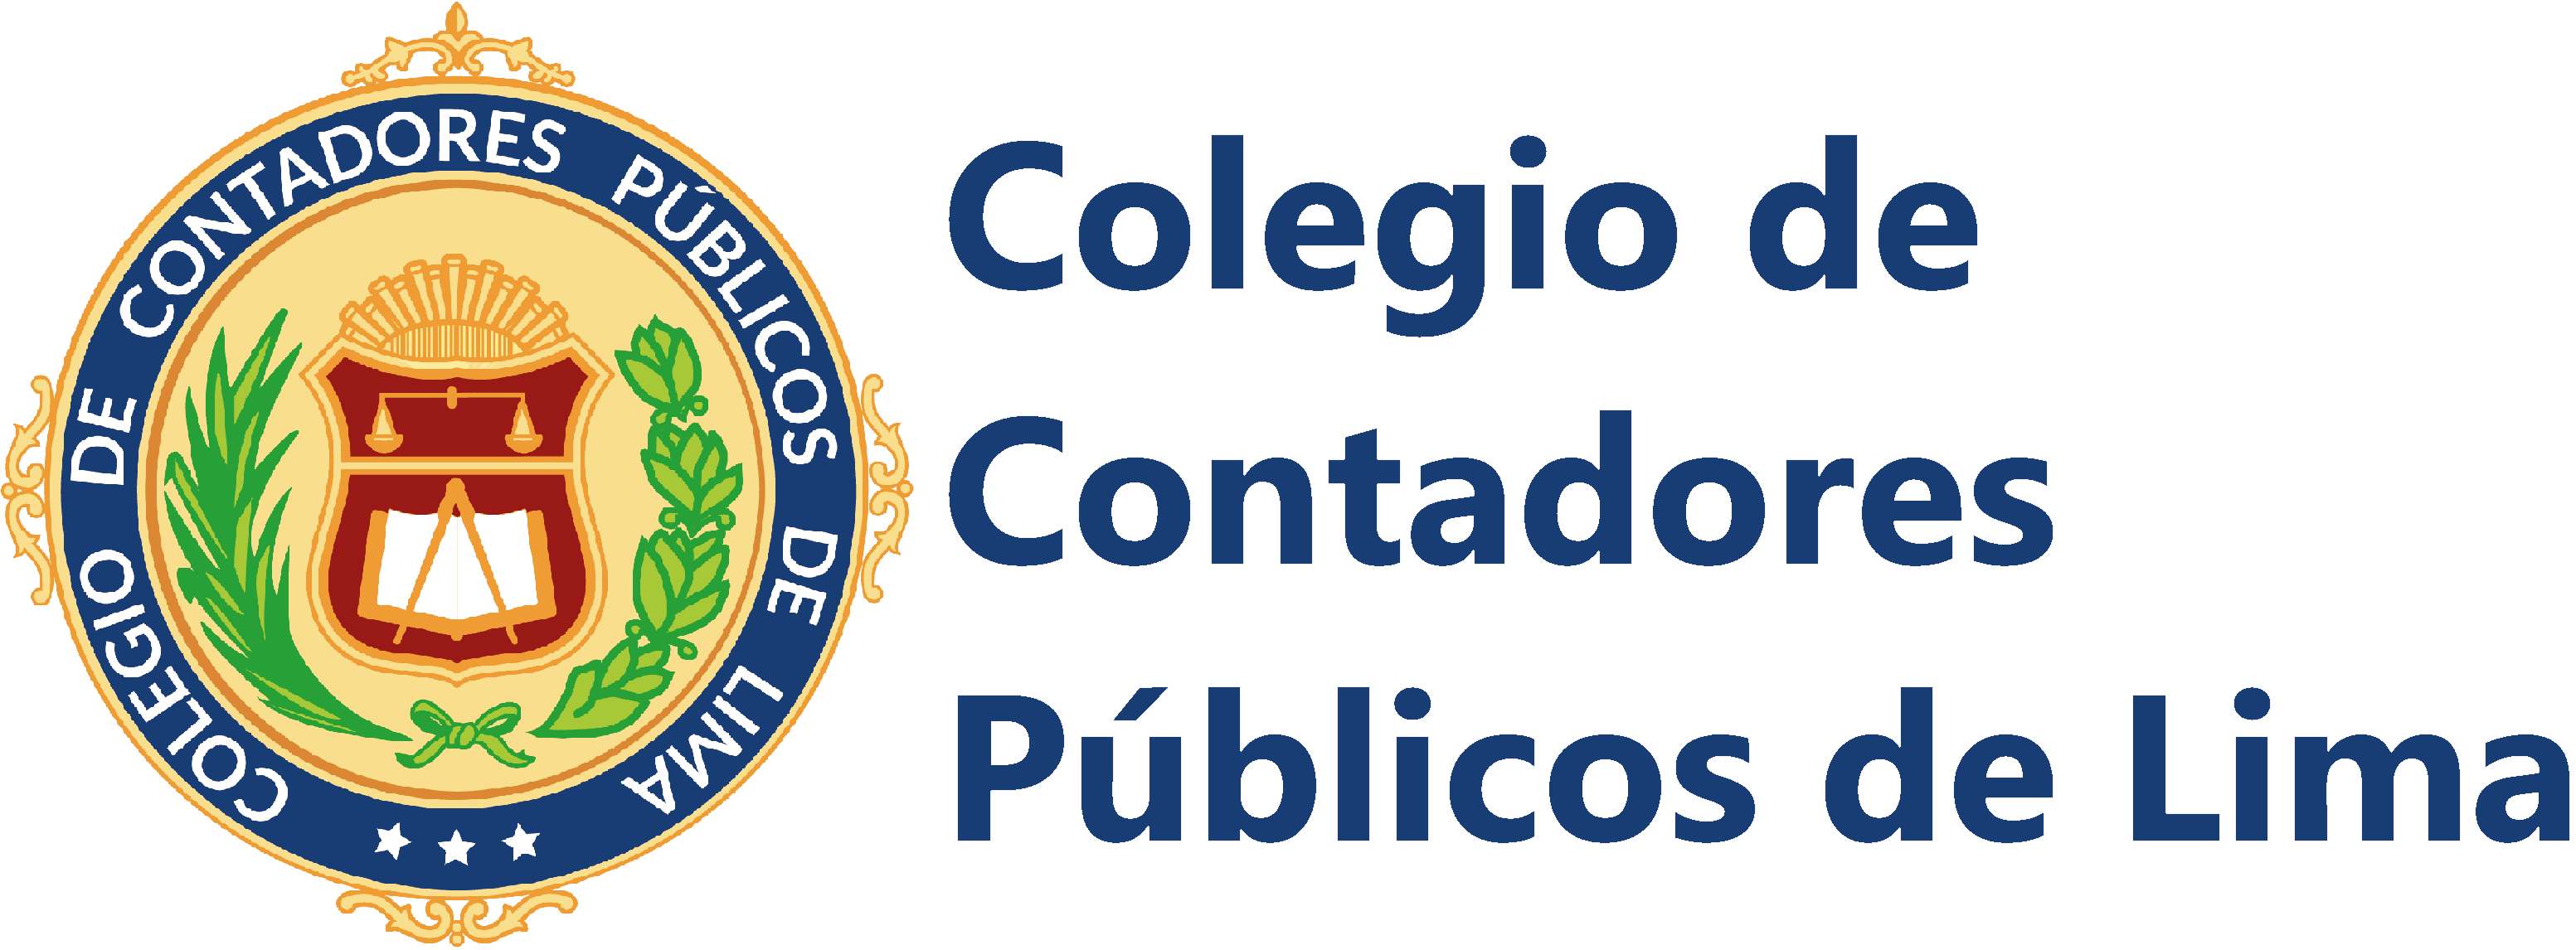 Colegio de Contadores Públicos de Lima